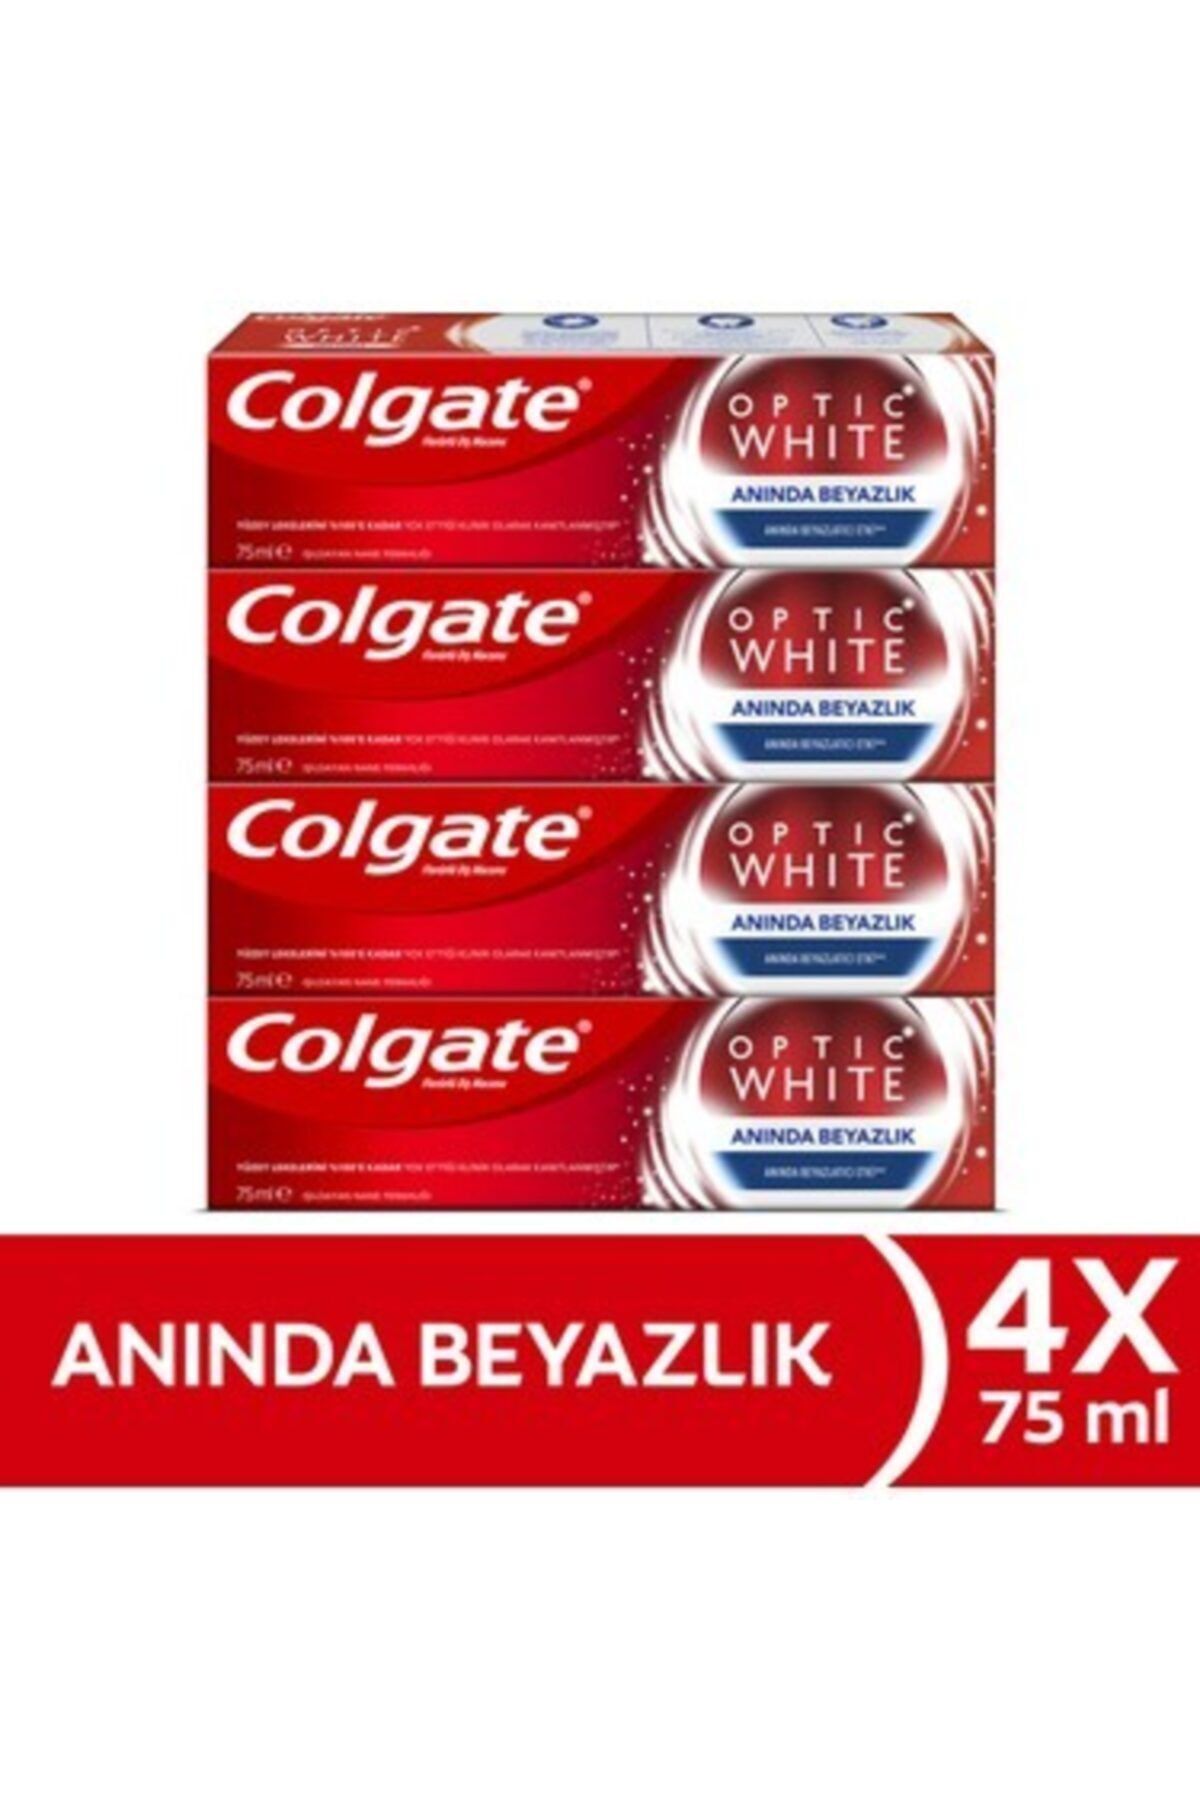 Colgate Optic White Anında Beyazlık 75 ml x 4